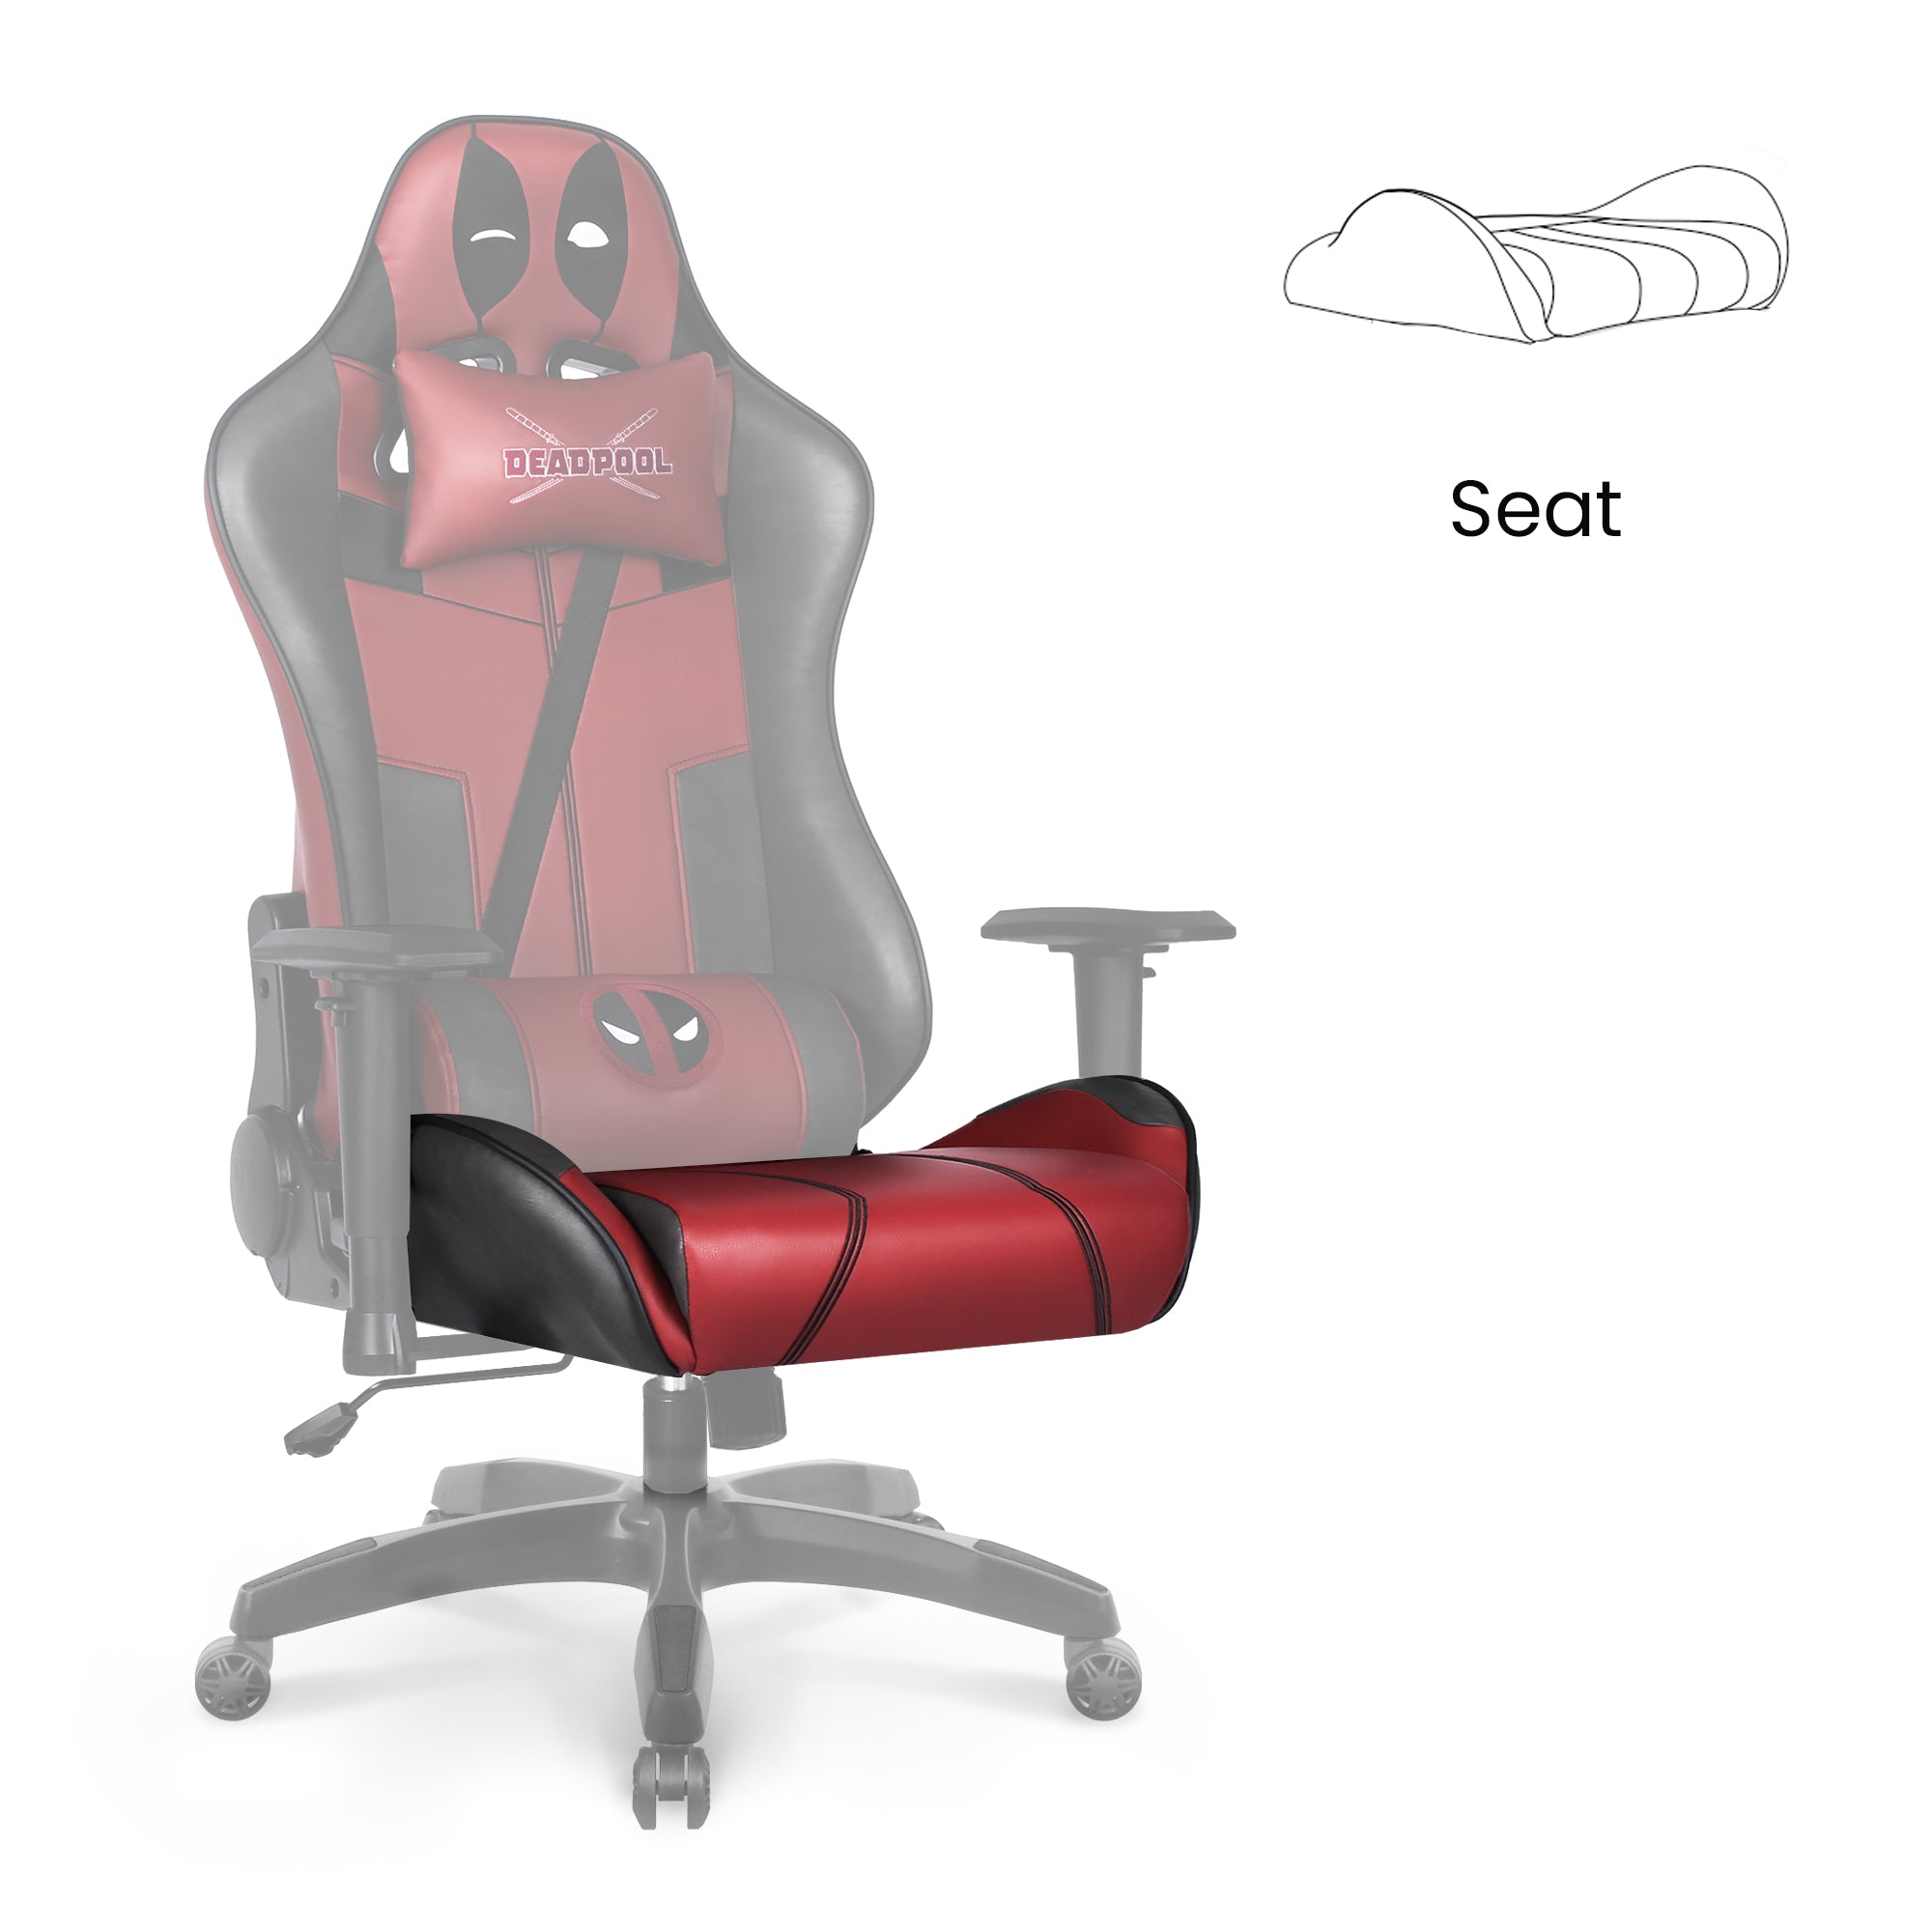 [part] ARC, ARC-R Seat